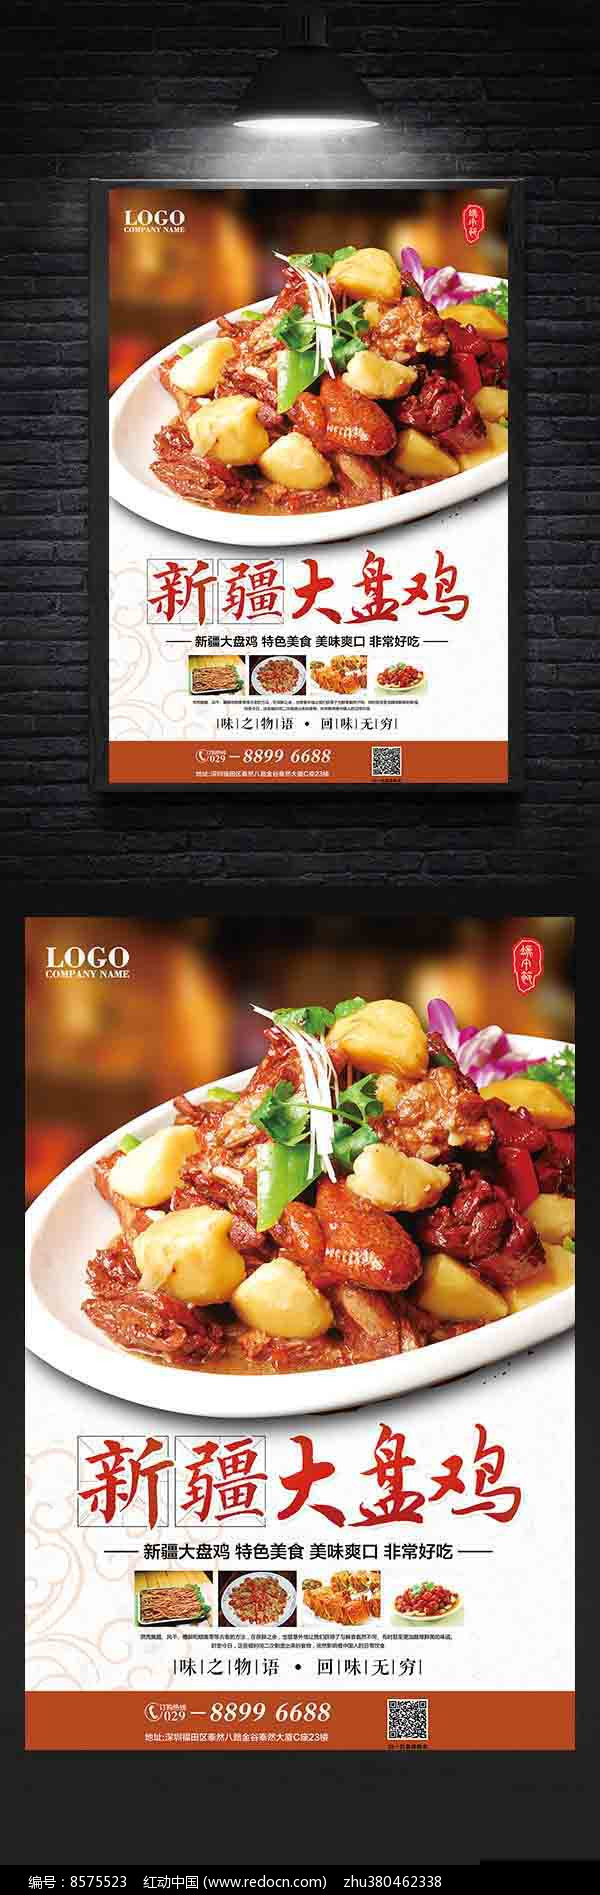 海报设计/宣传单/广告牌 海报设计 新疆大盘鸡中国风美食海报  素材